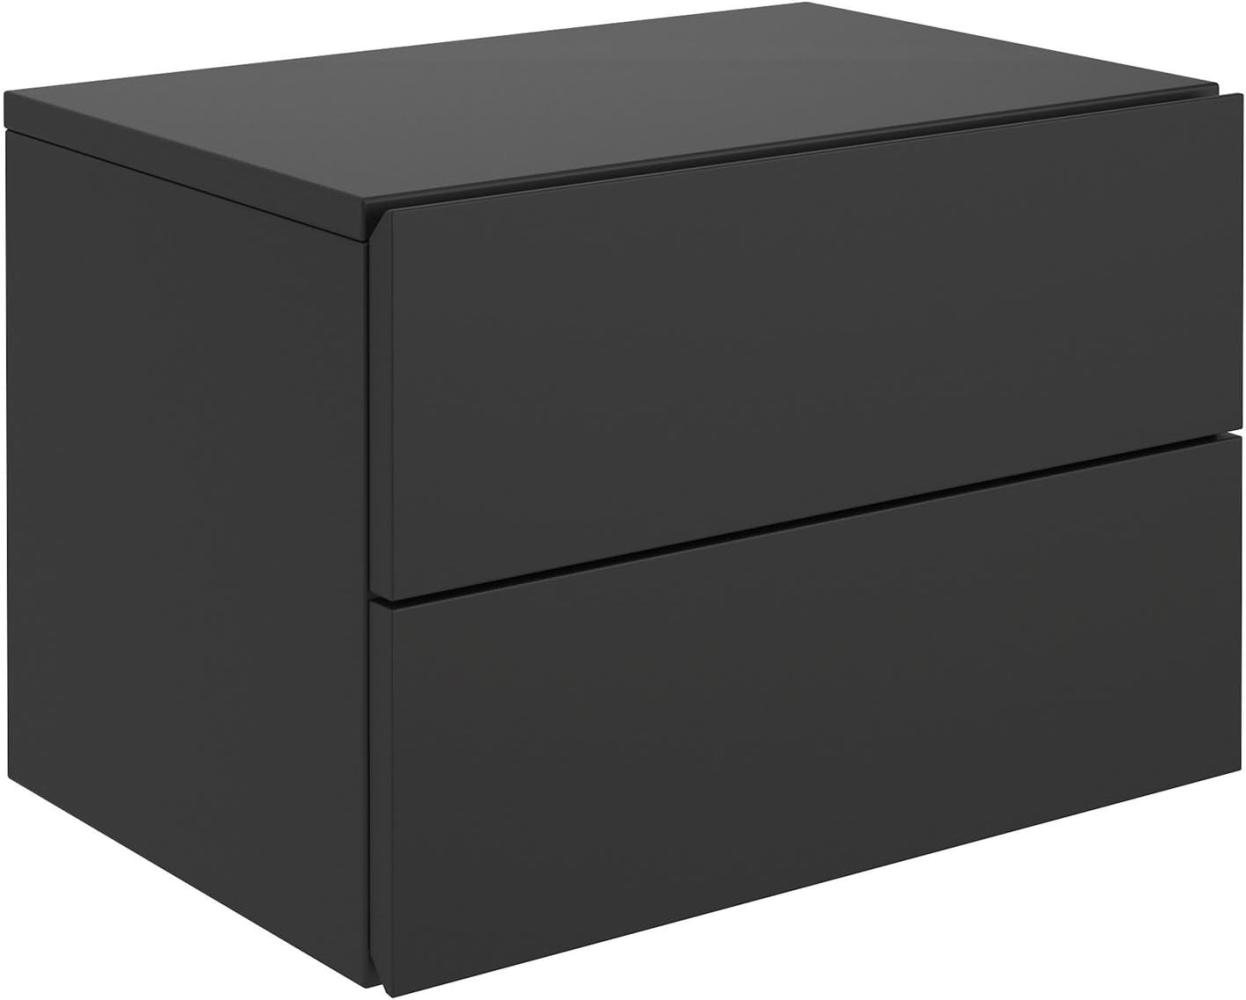 CARO-Möbel Nachtkommode ANNI Nachttisch Nachtschrank hängend Wandregal mit 2 Schubladen in schwarz Bild 1